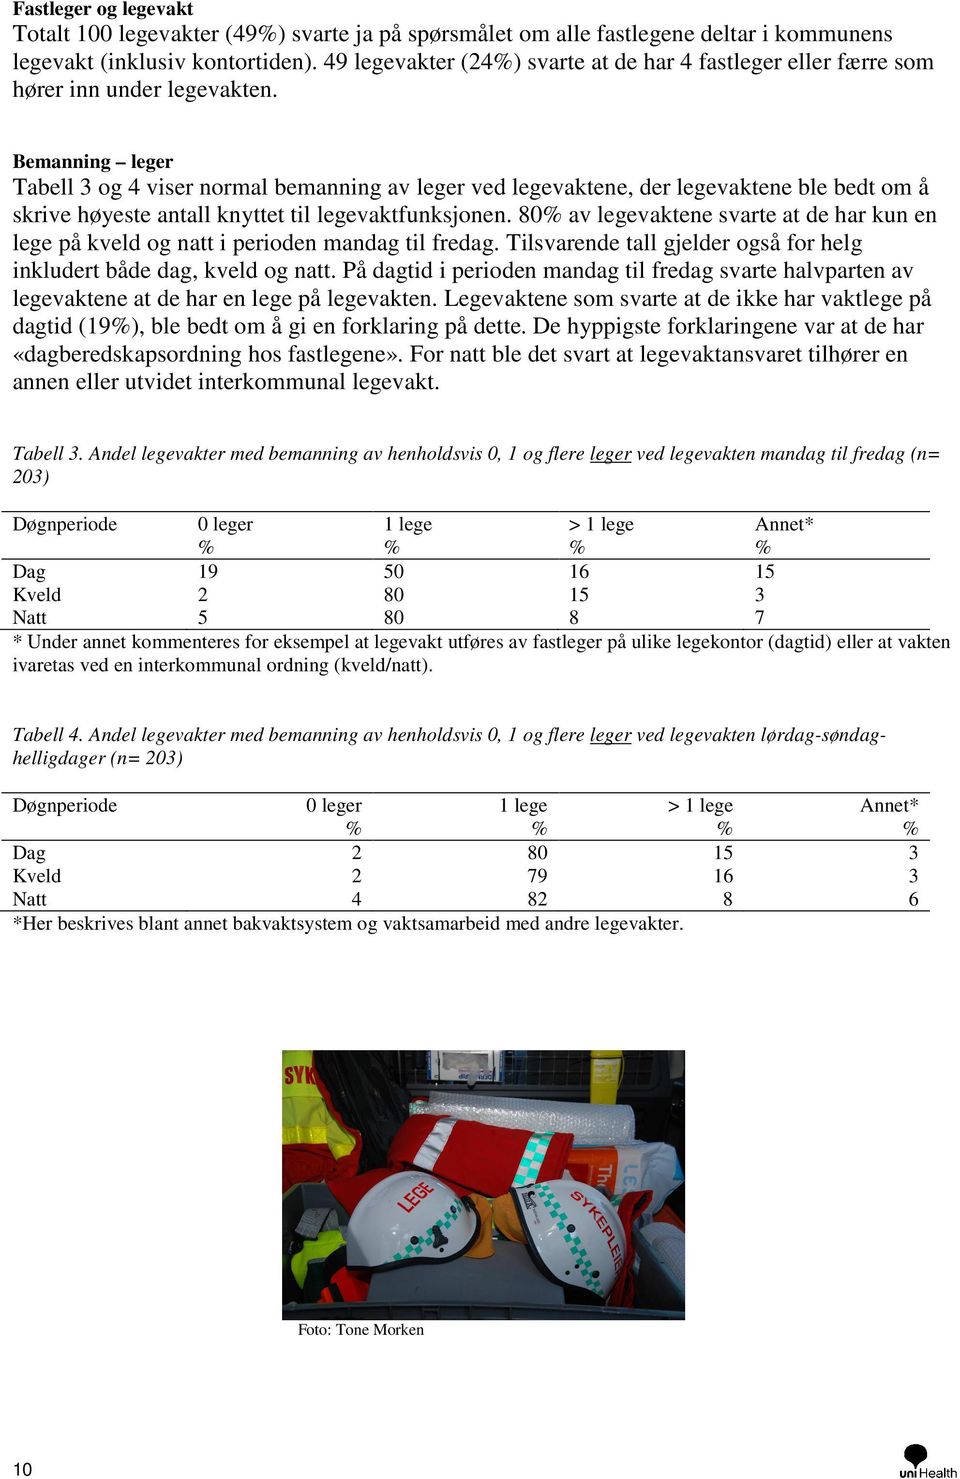 Bemanning leger Tabell 3 og 4 viser normal bemanning av leger ved legevaktene, der legevaktene ble bedt om å skrive høyeste antall knyttet til legevaktfunksjonen.